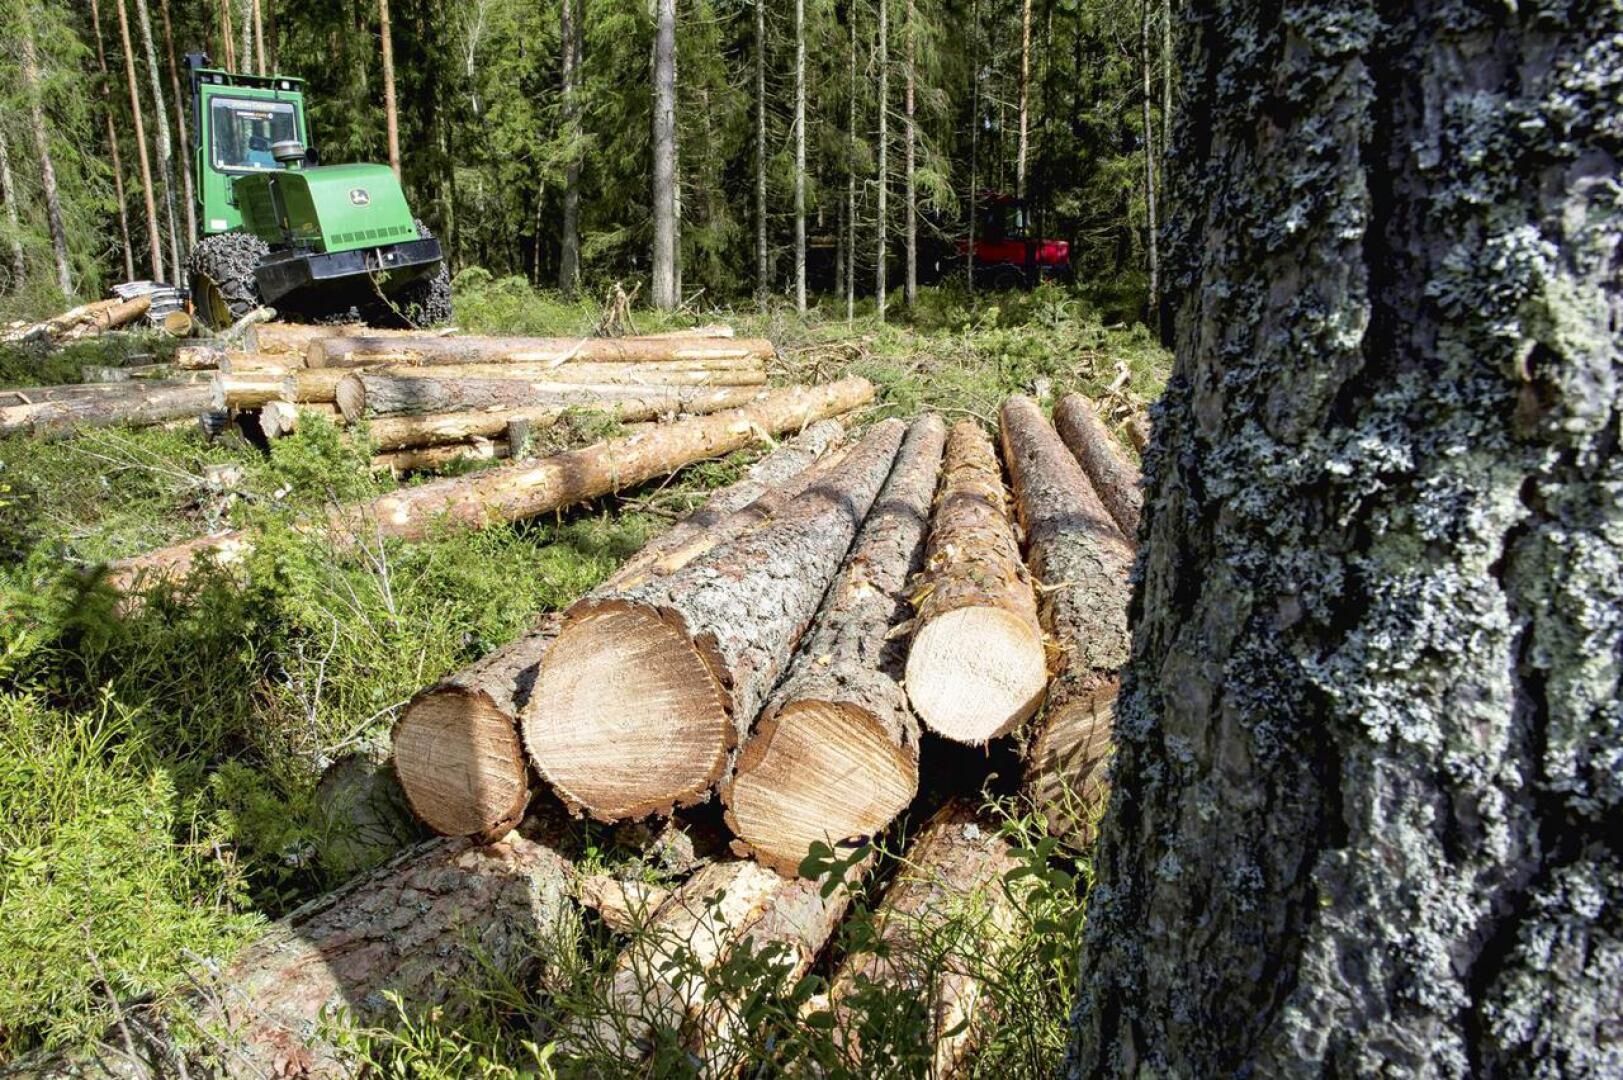 Kirjoittajan mielestä niin sanottu jatkuva kasvatus, jossa korjataan tukkipuut ja jätetään pienempi puusto, on ekologinen vaihtoehto metsänhoitoon. 